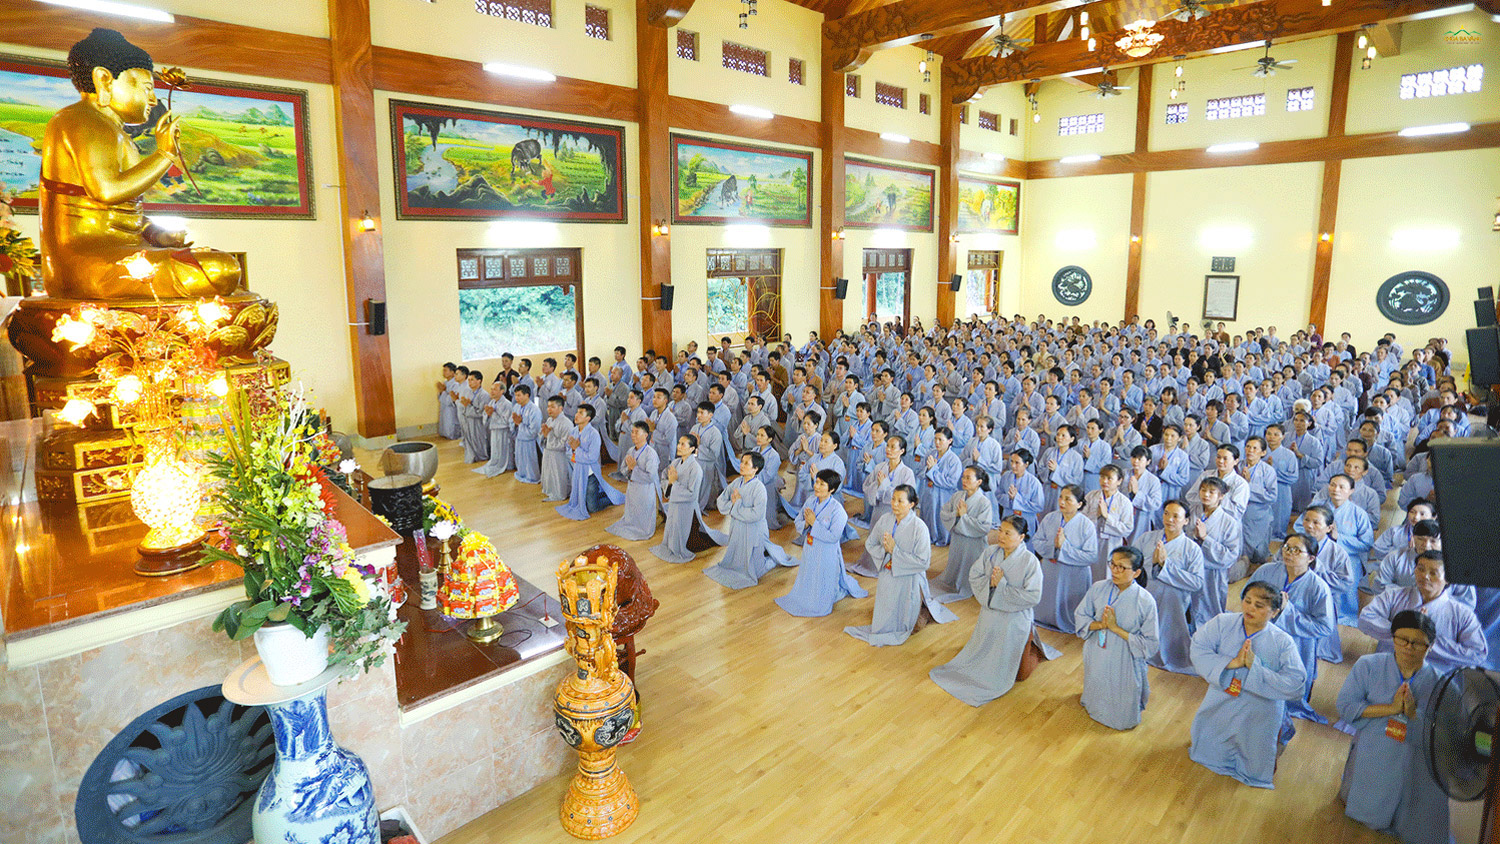 CLB Cúc Vàng Tập Tu Lục Hòa là môi trường để các Phật tử tu tập lục hòa, cùng nâng đỡ, đoàn kết trong quá trình tu tập và thực hành thiện phận sự.